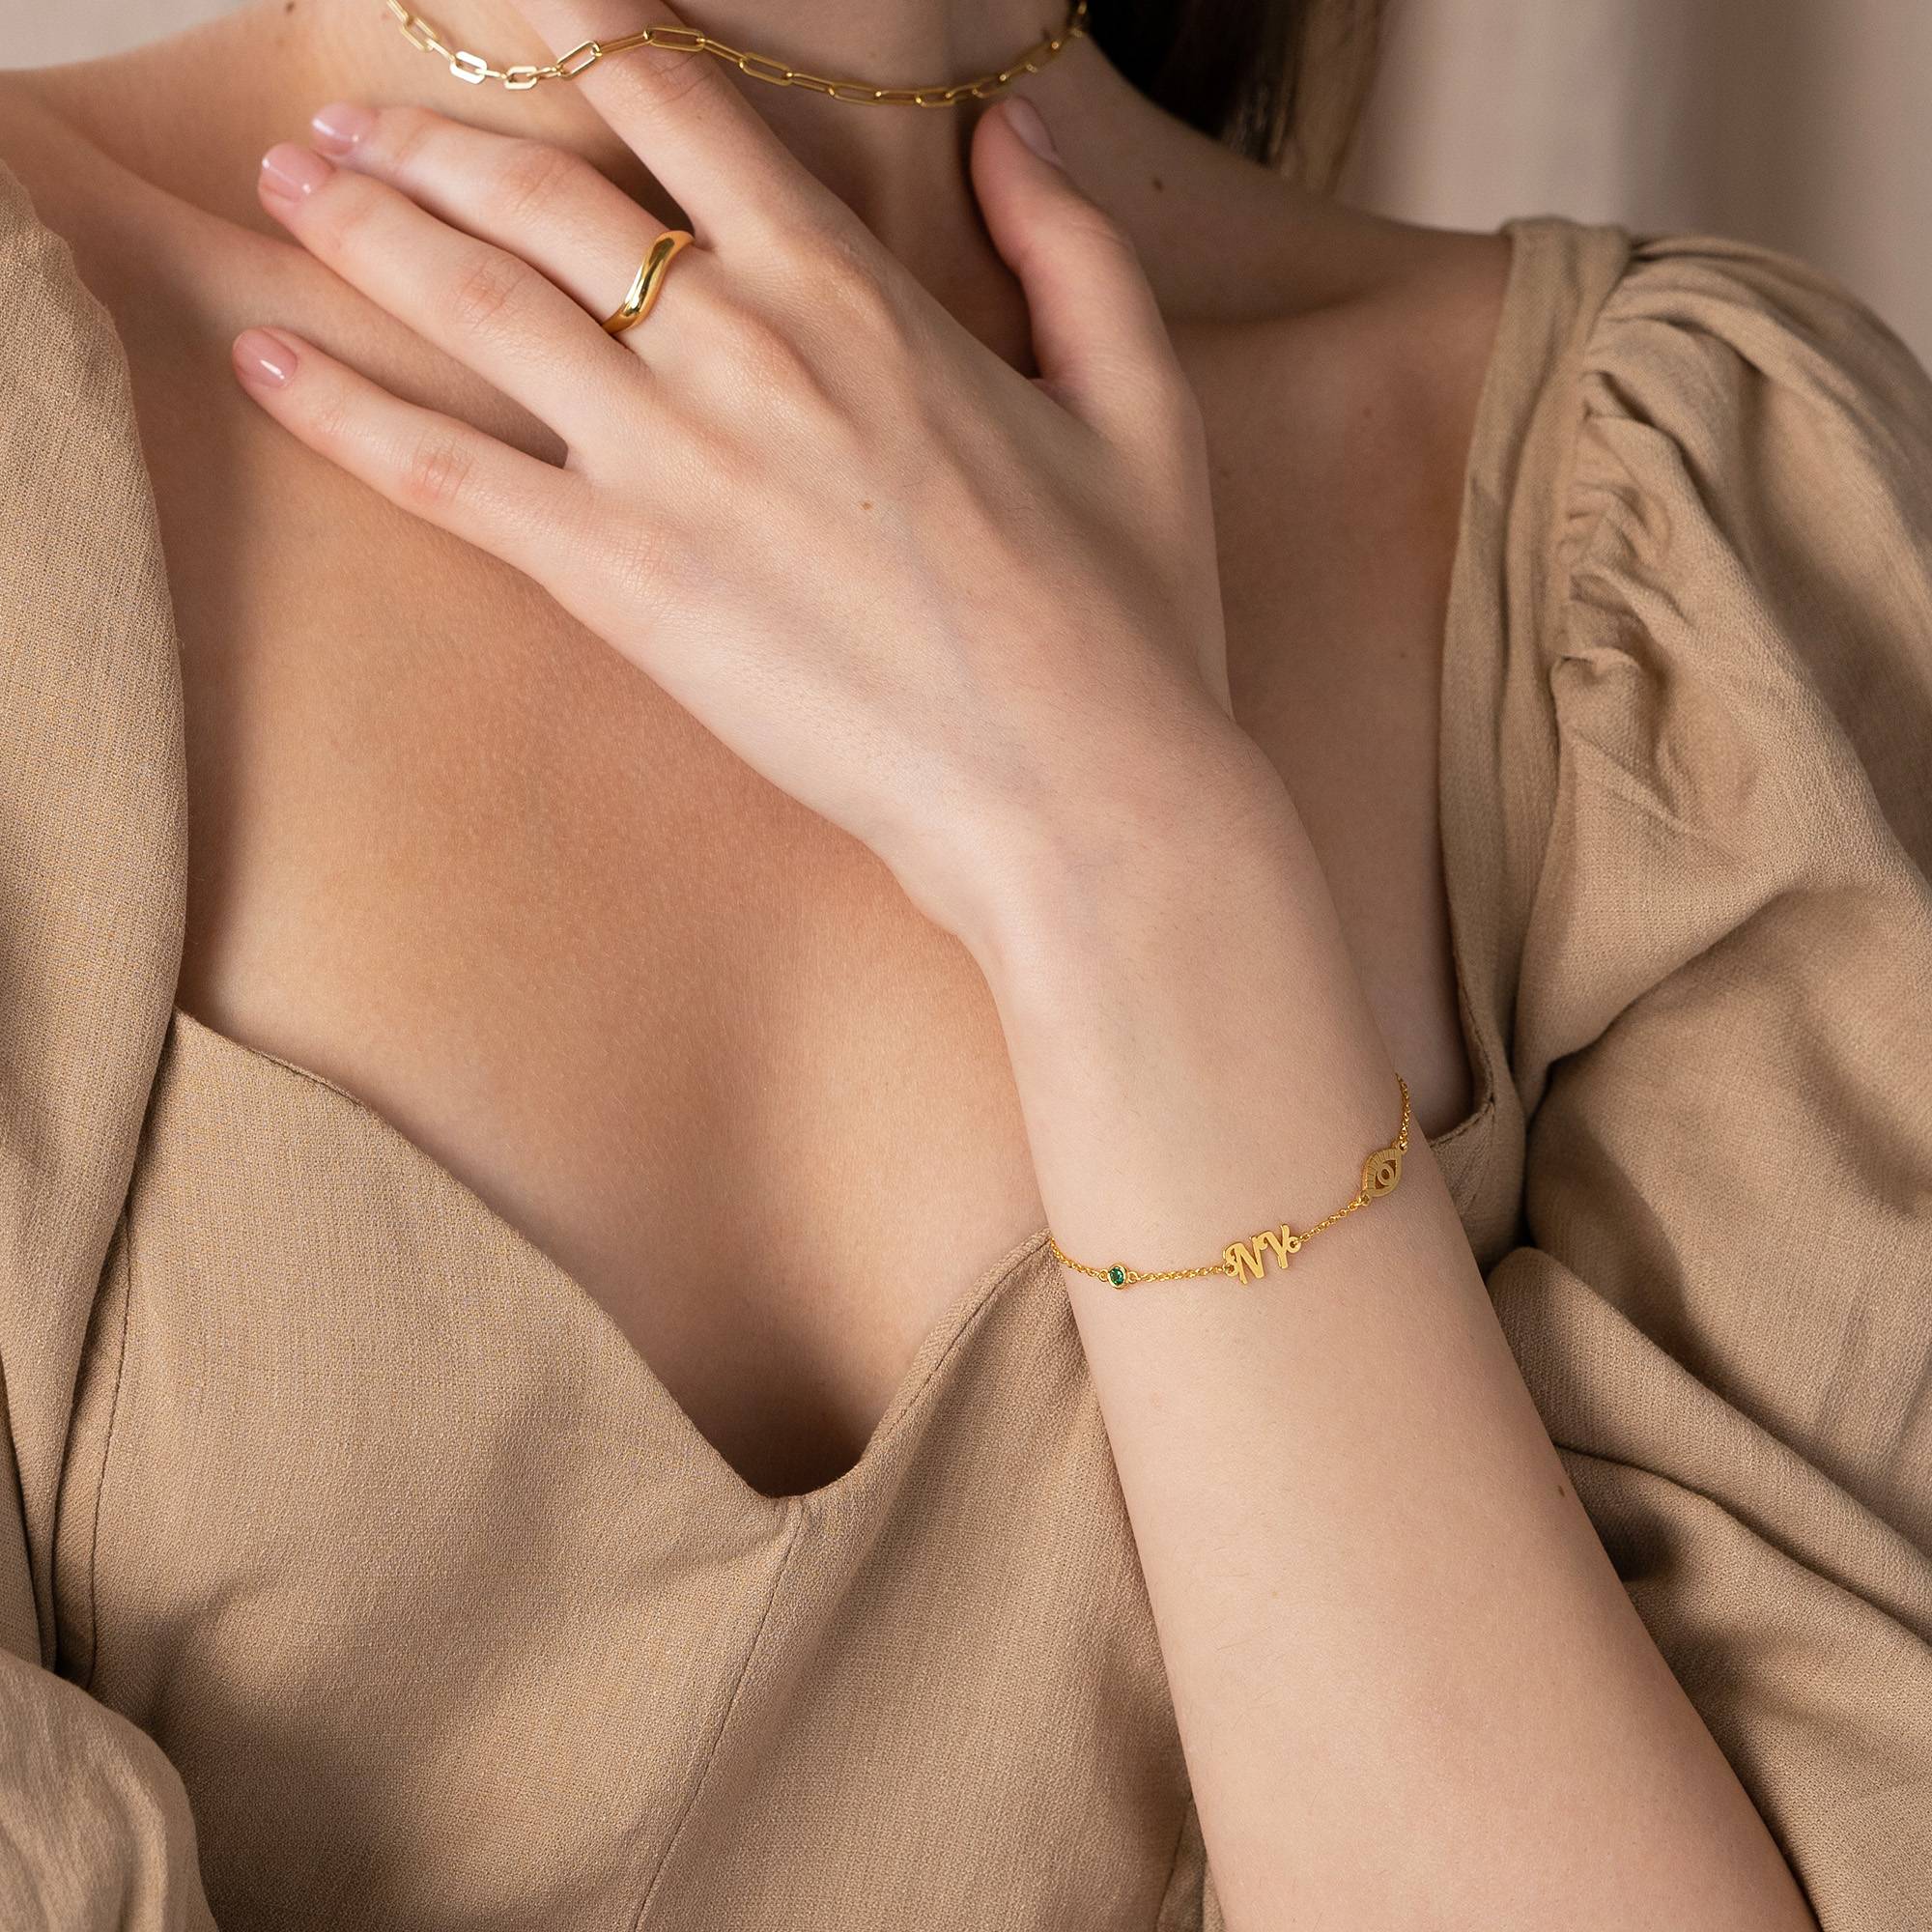 Bridget Boze Oog Initiaal Armband/Enkelbandje met Edelsteen in 18k Goud Vermeil-3 Productfoto